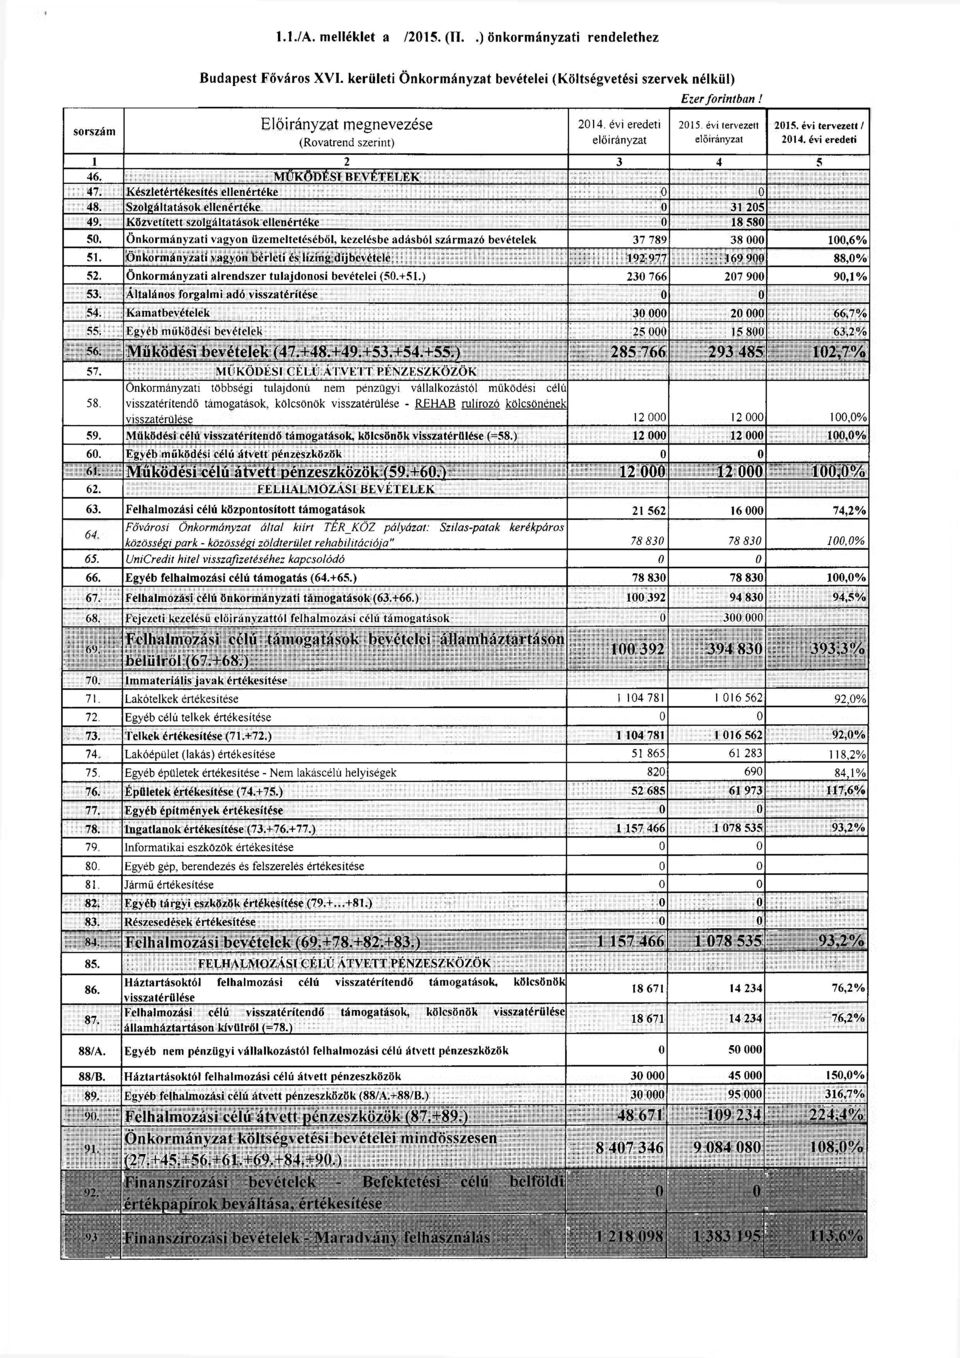 Közvetített szolgáltatások ellenértéke 0 18 580 50. Önkormányzati vagyon üzemeltetéséből, kezelésbe adásból származó bevételek 37 789 38 000 100,6% 51.